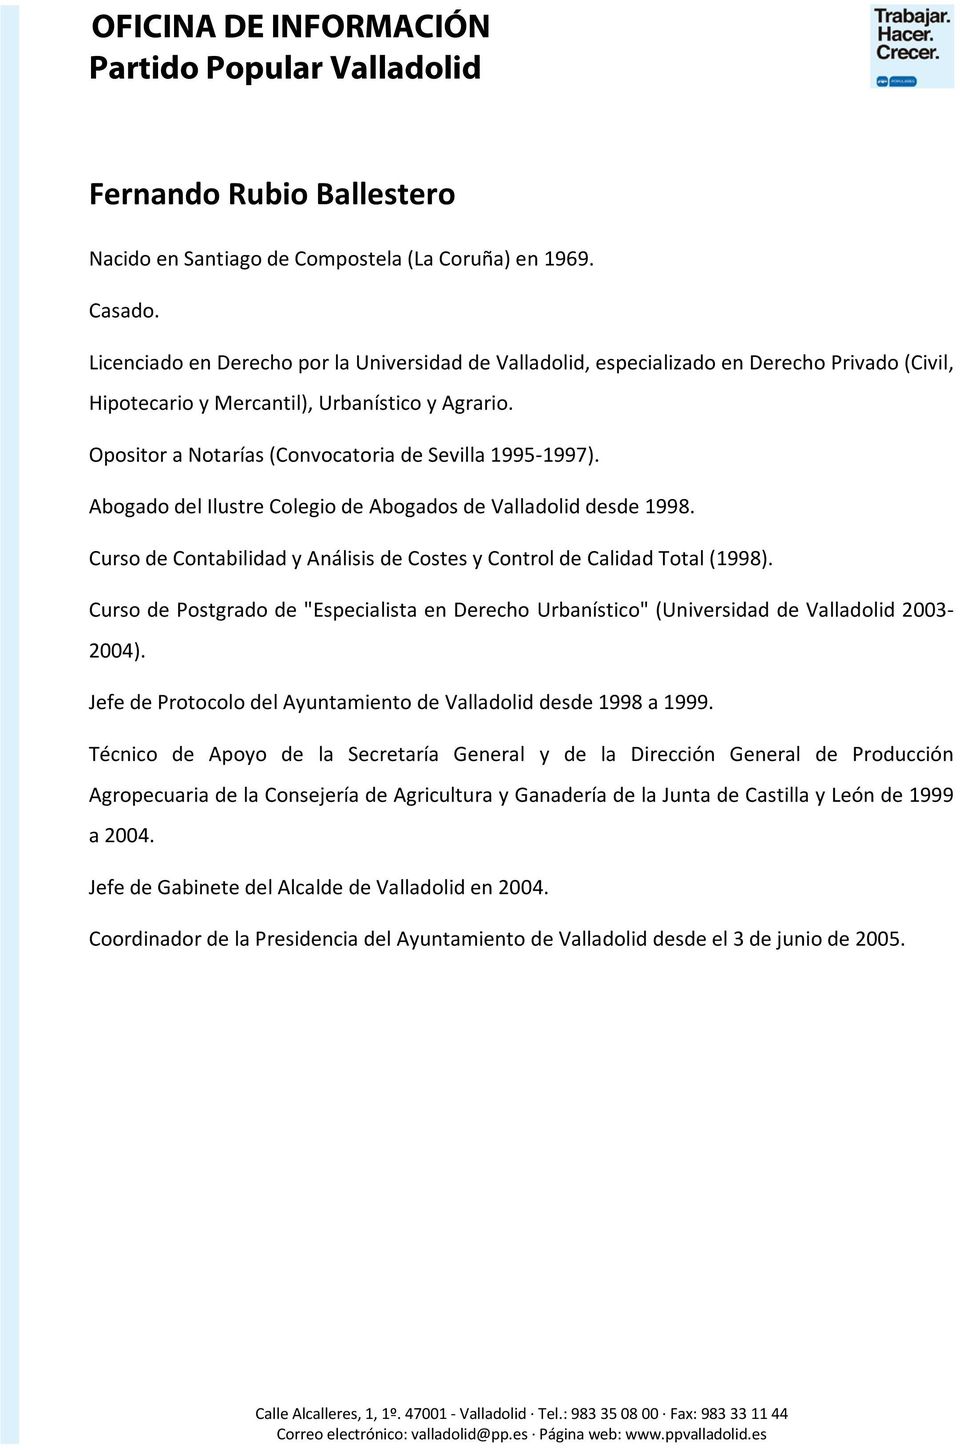 Opositor a Notarías (Convocatoria de Sevilla 1995-1997). Abogado del Ilustre Colegio de Abogados de Valladolid desde 1998. Curso de Contabilidad y Análisis de Costes y Control de Calidad Total (1998).